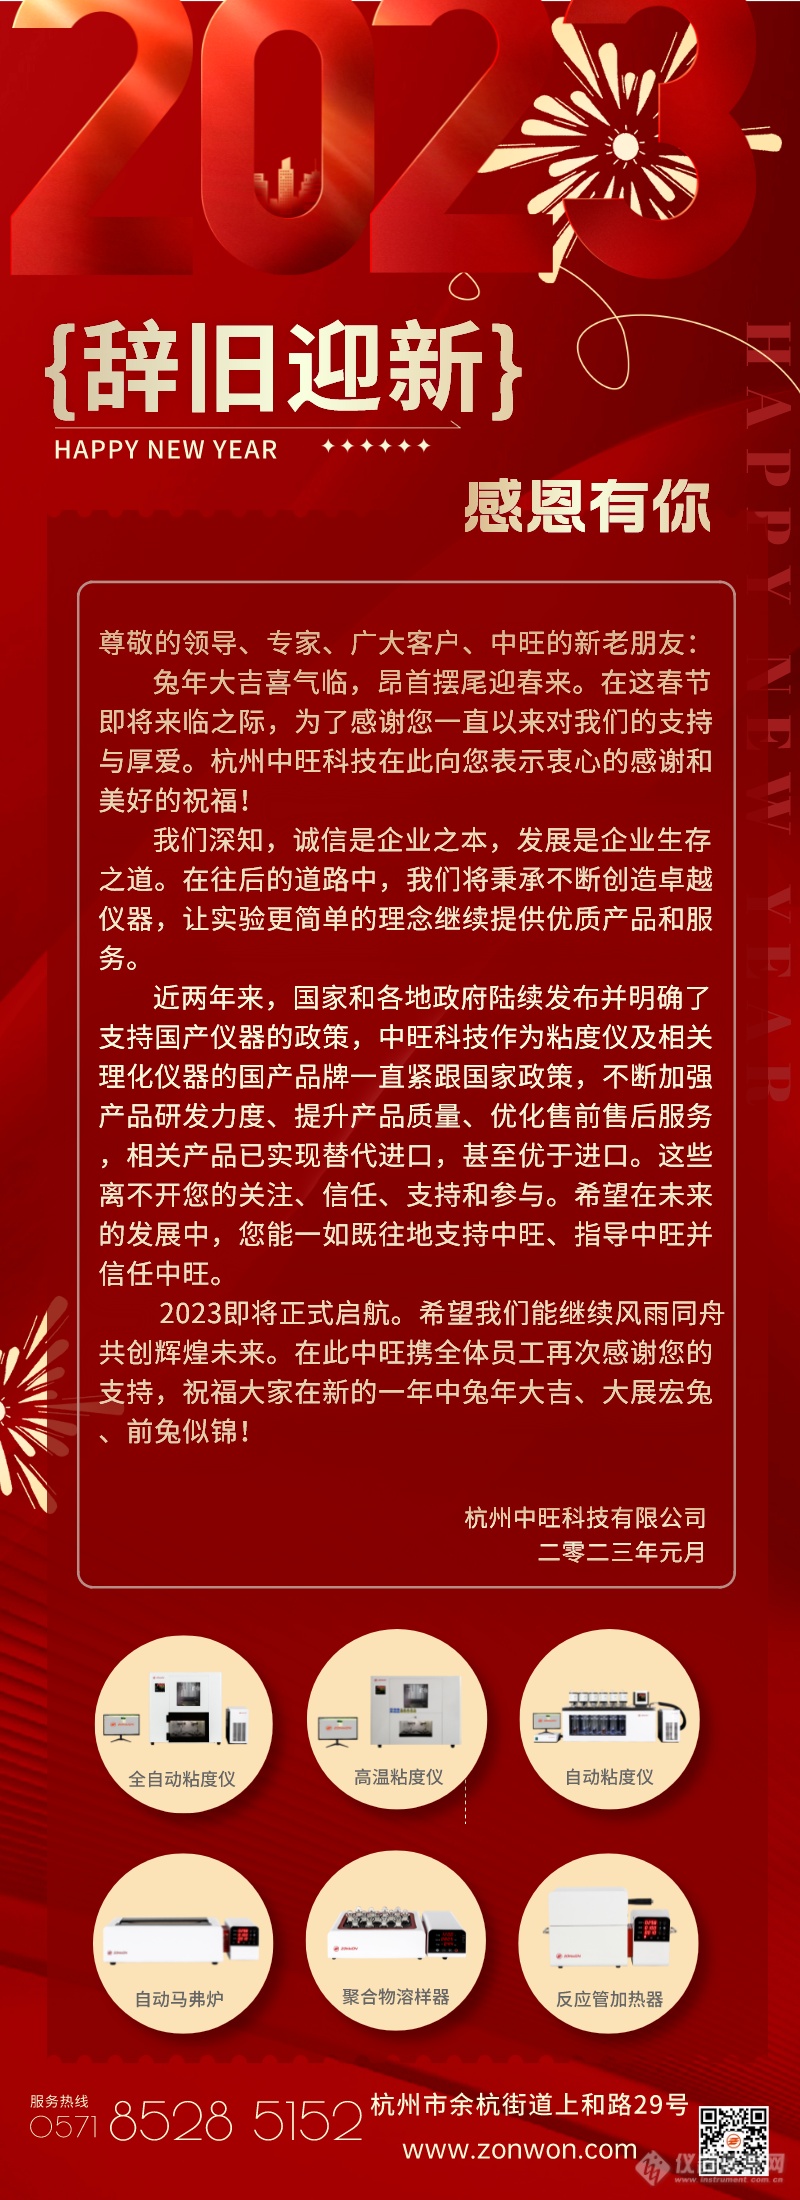 副本红金风医美整形新年换新颜活动促销长图海报.png